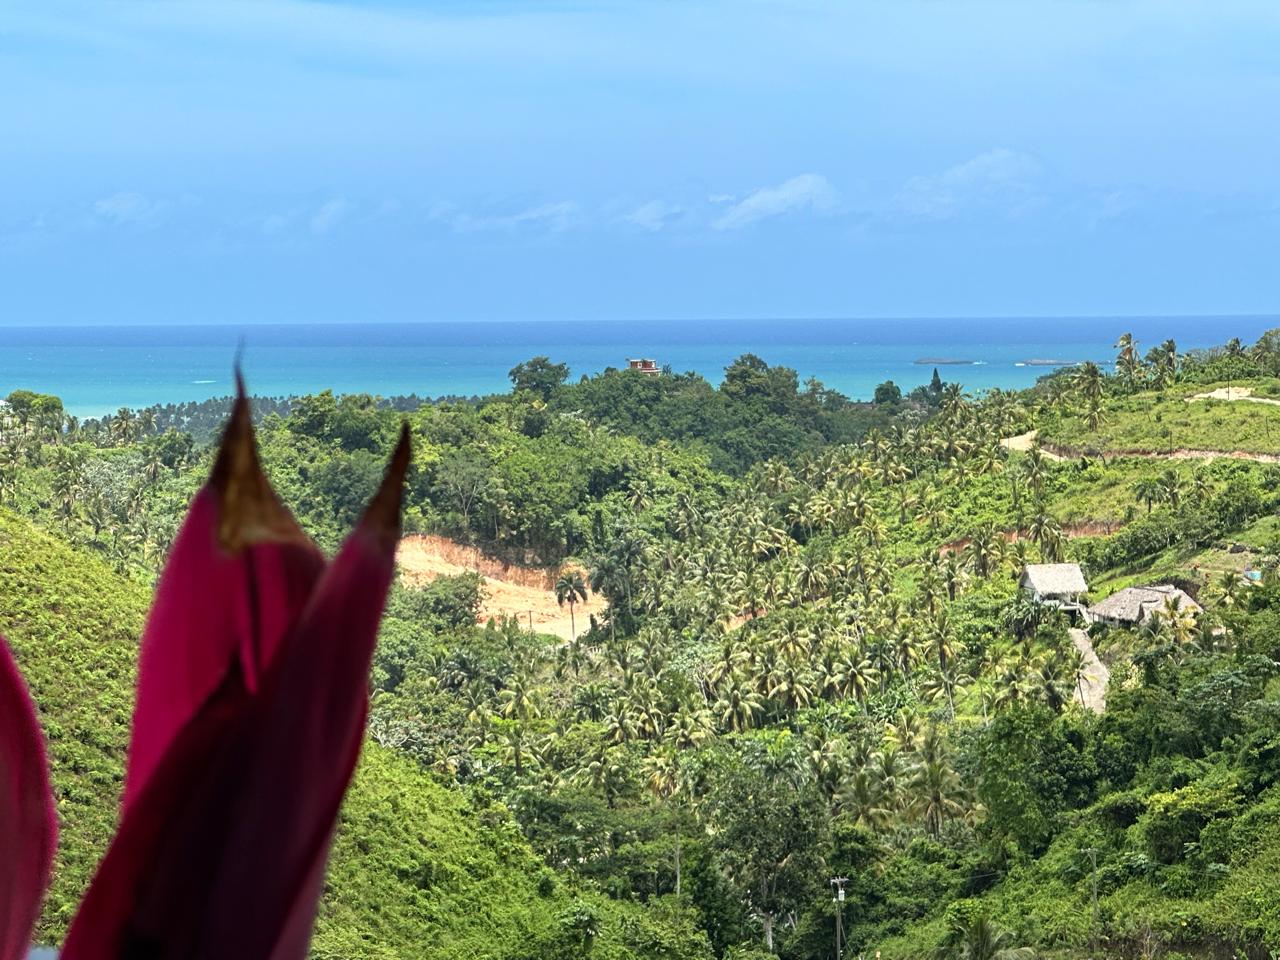 Splendid 4-bedroom villa with ocean vista - Las Terrenas Real Estate - Ocean Edge Dominican Republic (54)